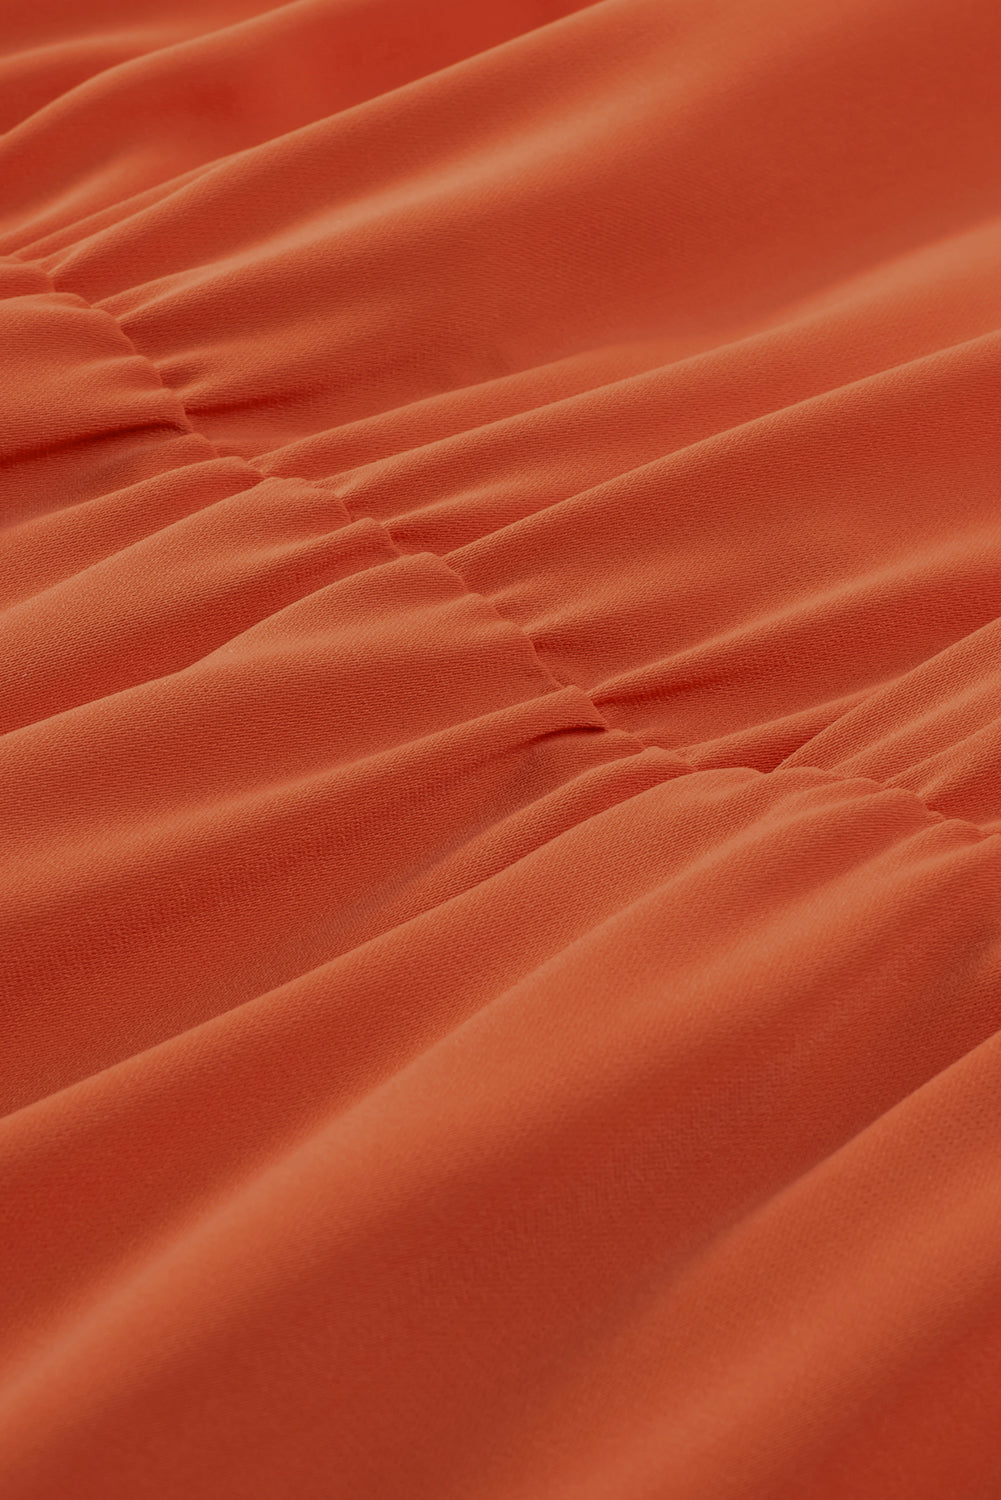 Rdeče oranžna dolga obleka brez rokavov z naboranimi robovi velike velikosti